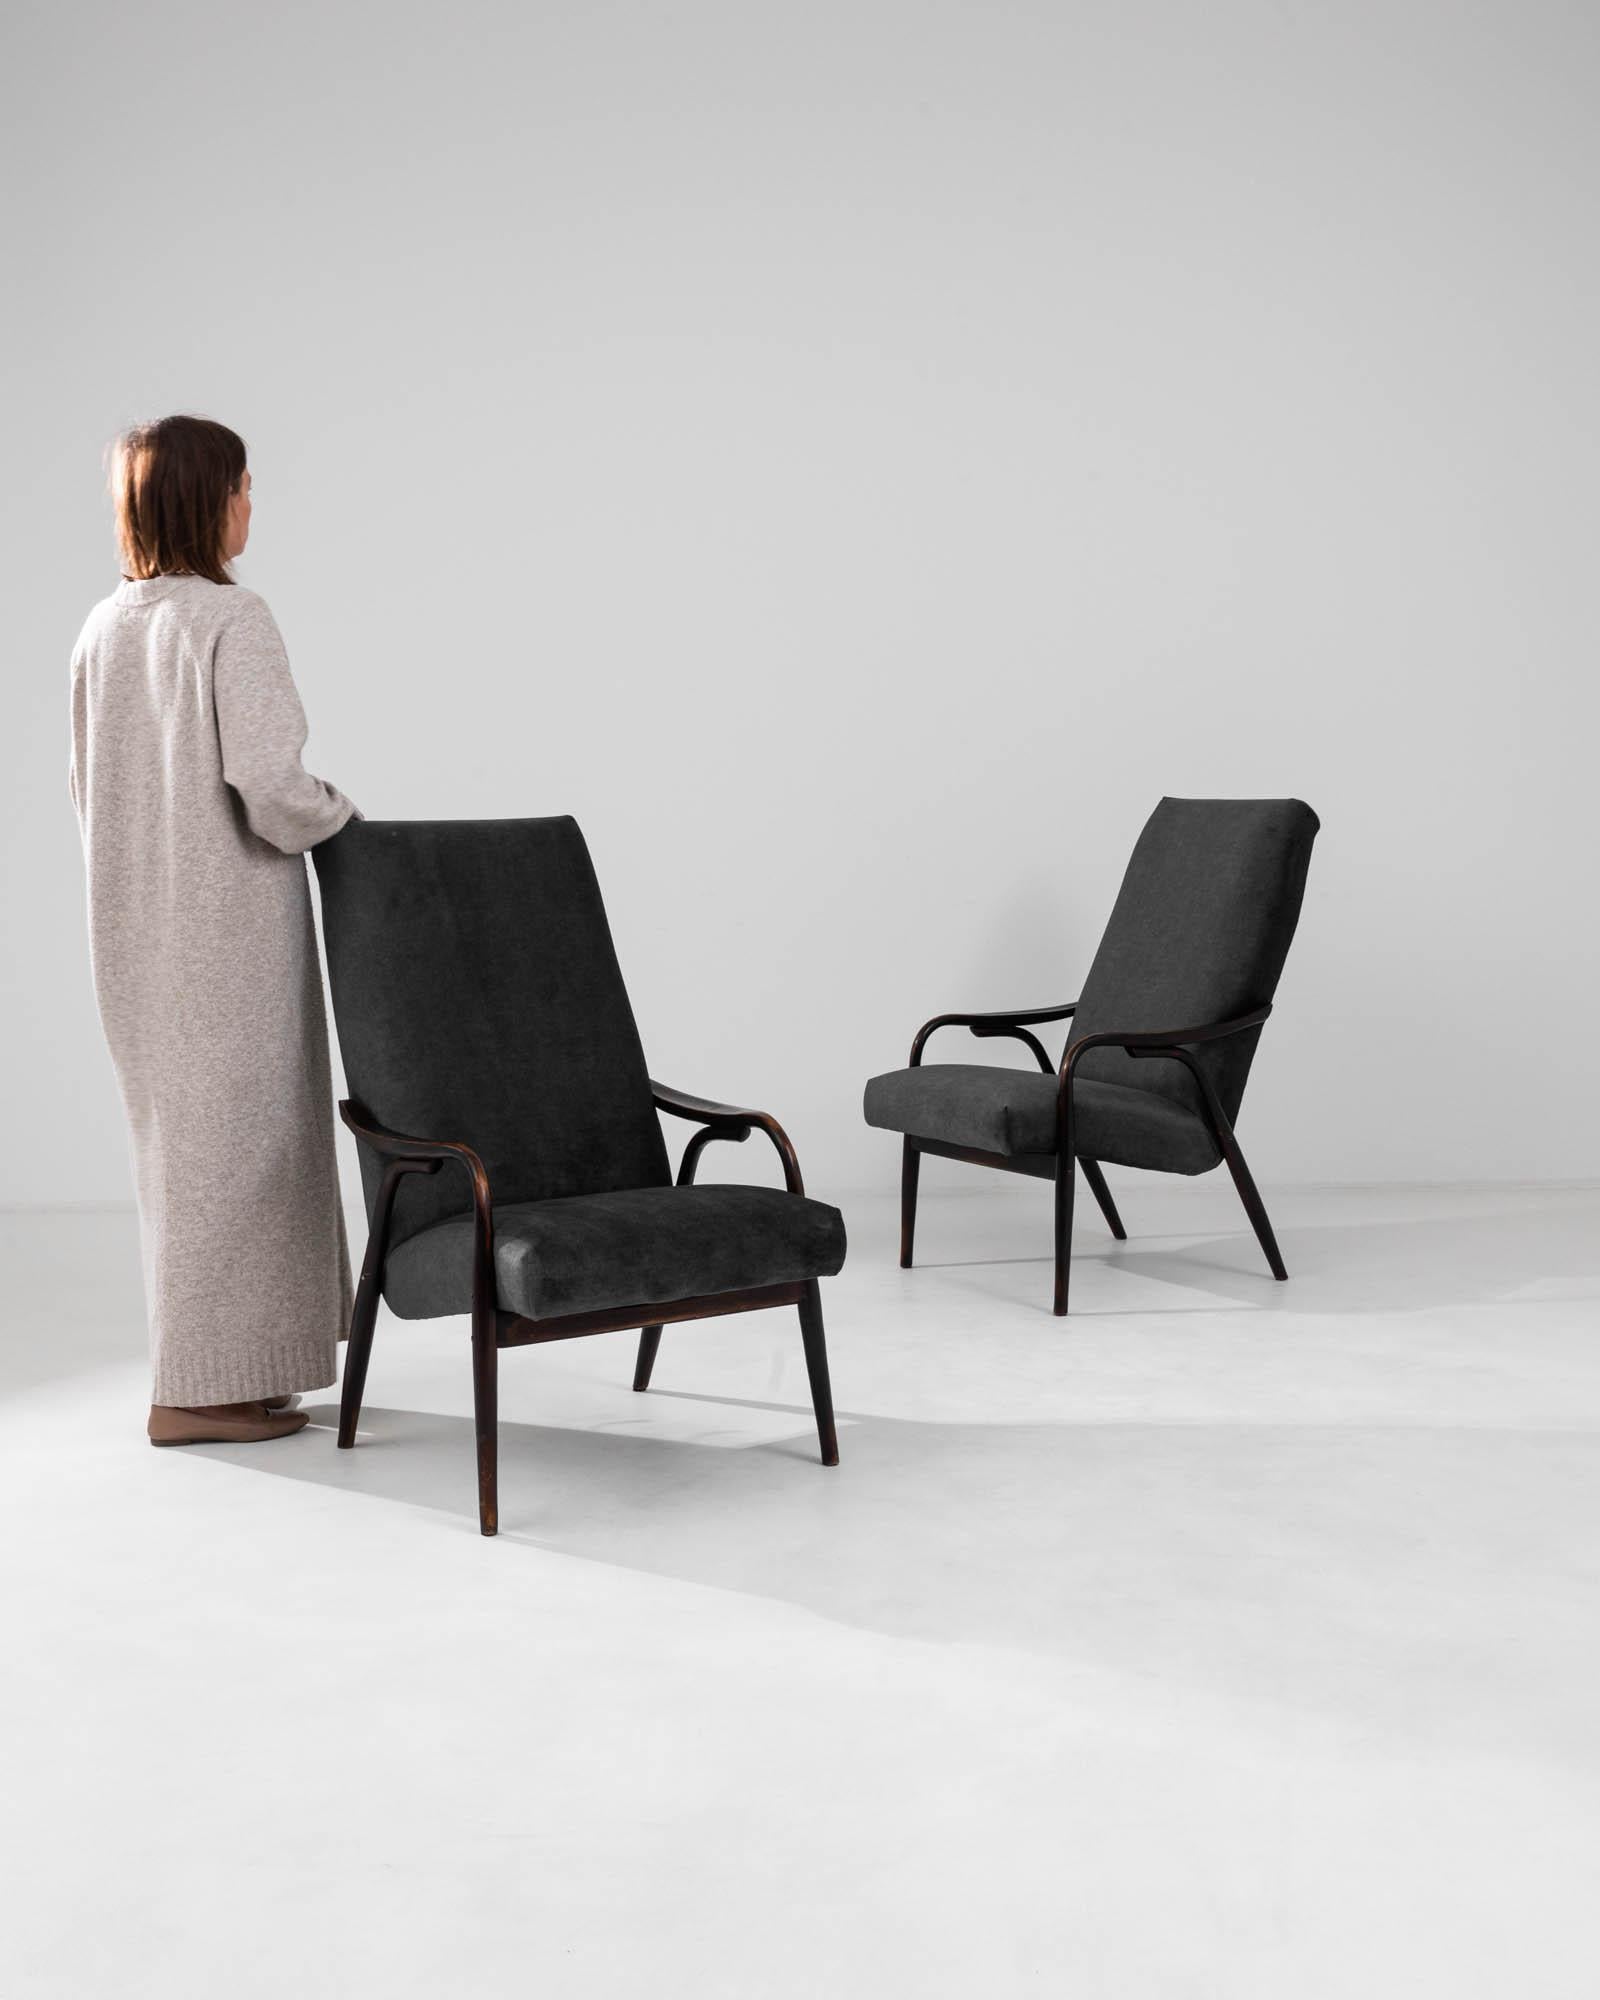 Entrez dans un monde de charme vintage avec cette paire de fauteuils tchèques des années 1960 par TON. Ces chefs-d'œuvre allient design fonctionnel et grâce esthétique, avec des cadres en bois élégants et incurvés qui exsudent une tonalité sombre et